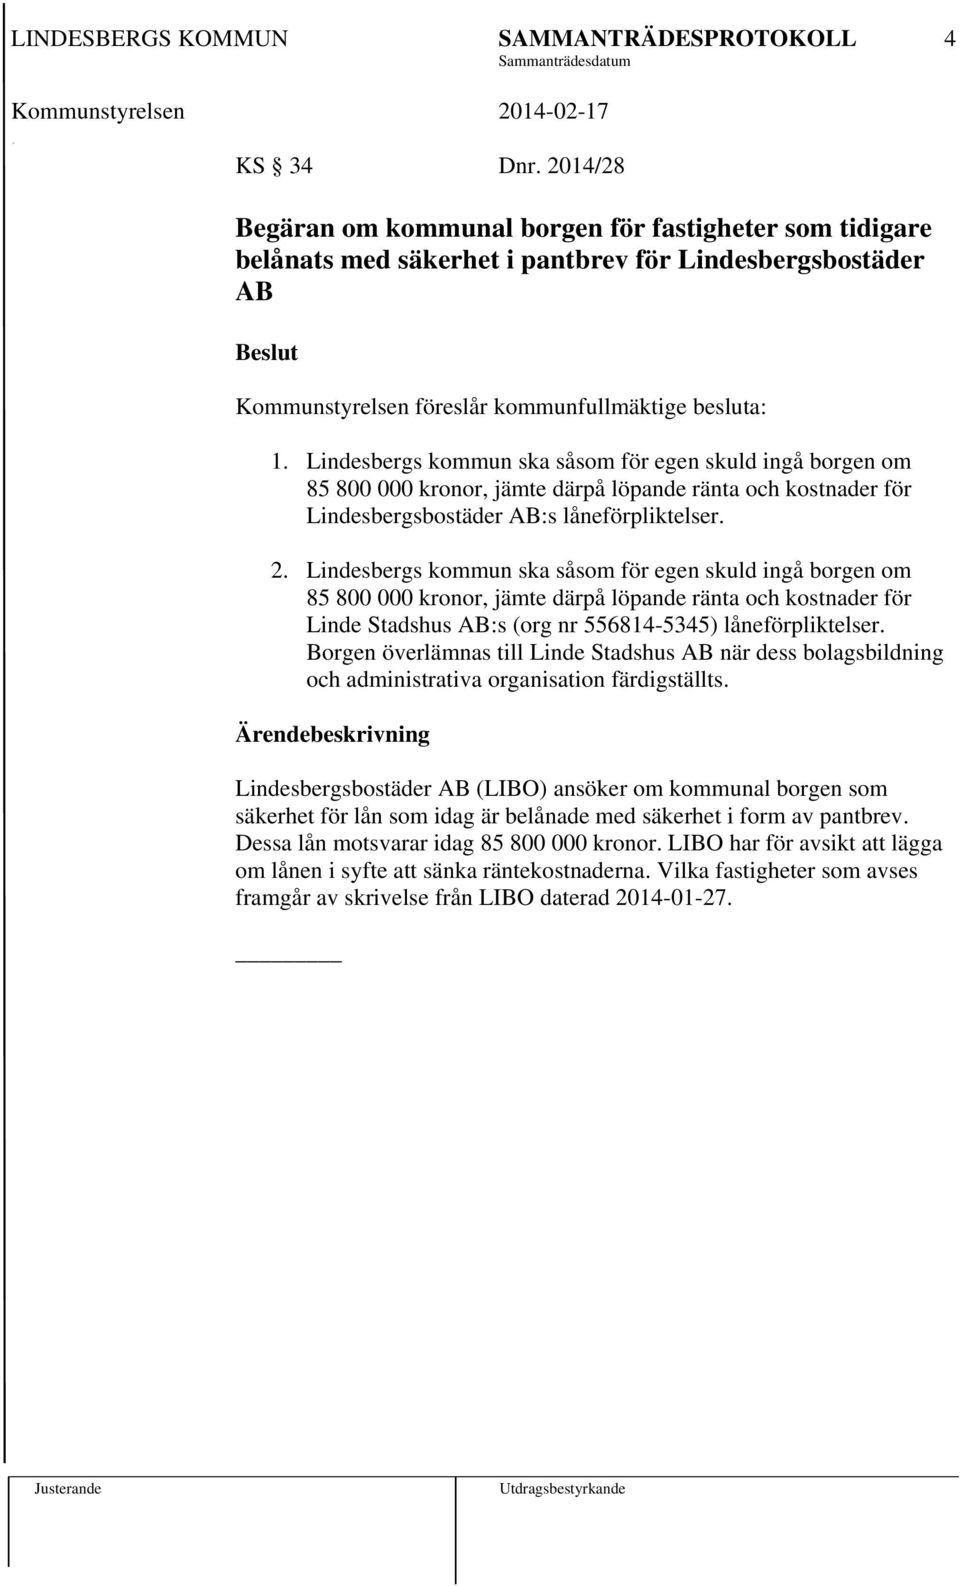 Lindesbergs kommun ska såsom för egen skuld ingå borgen om 85 800 000 kronor, jämte därpå löpande ränta och kostnader för Linde Stadshus AB:s (org nr 556814-5345) låneförpliktelser.